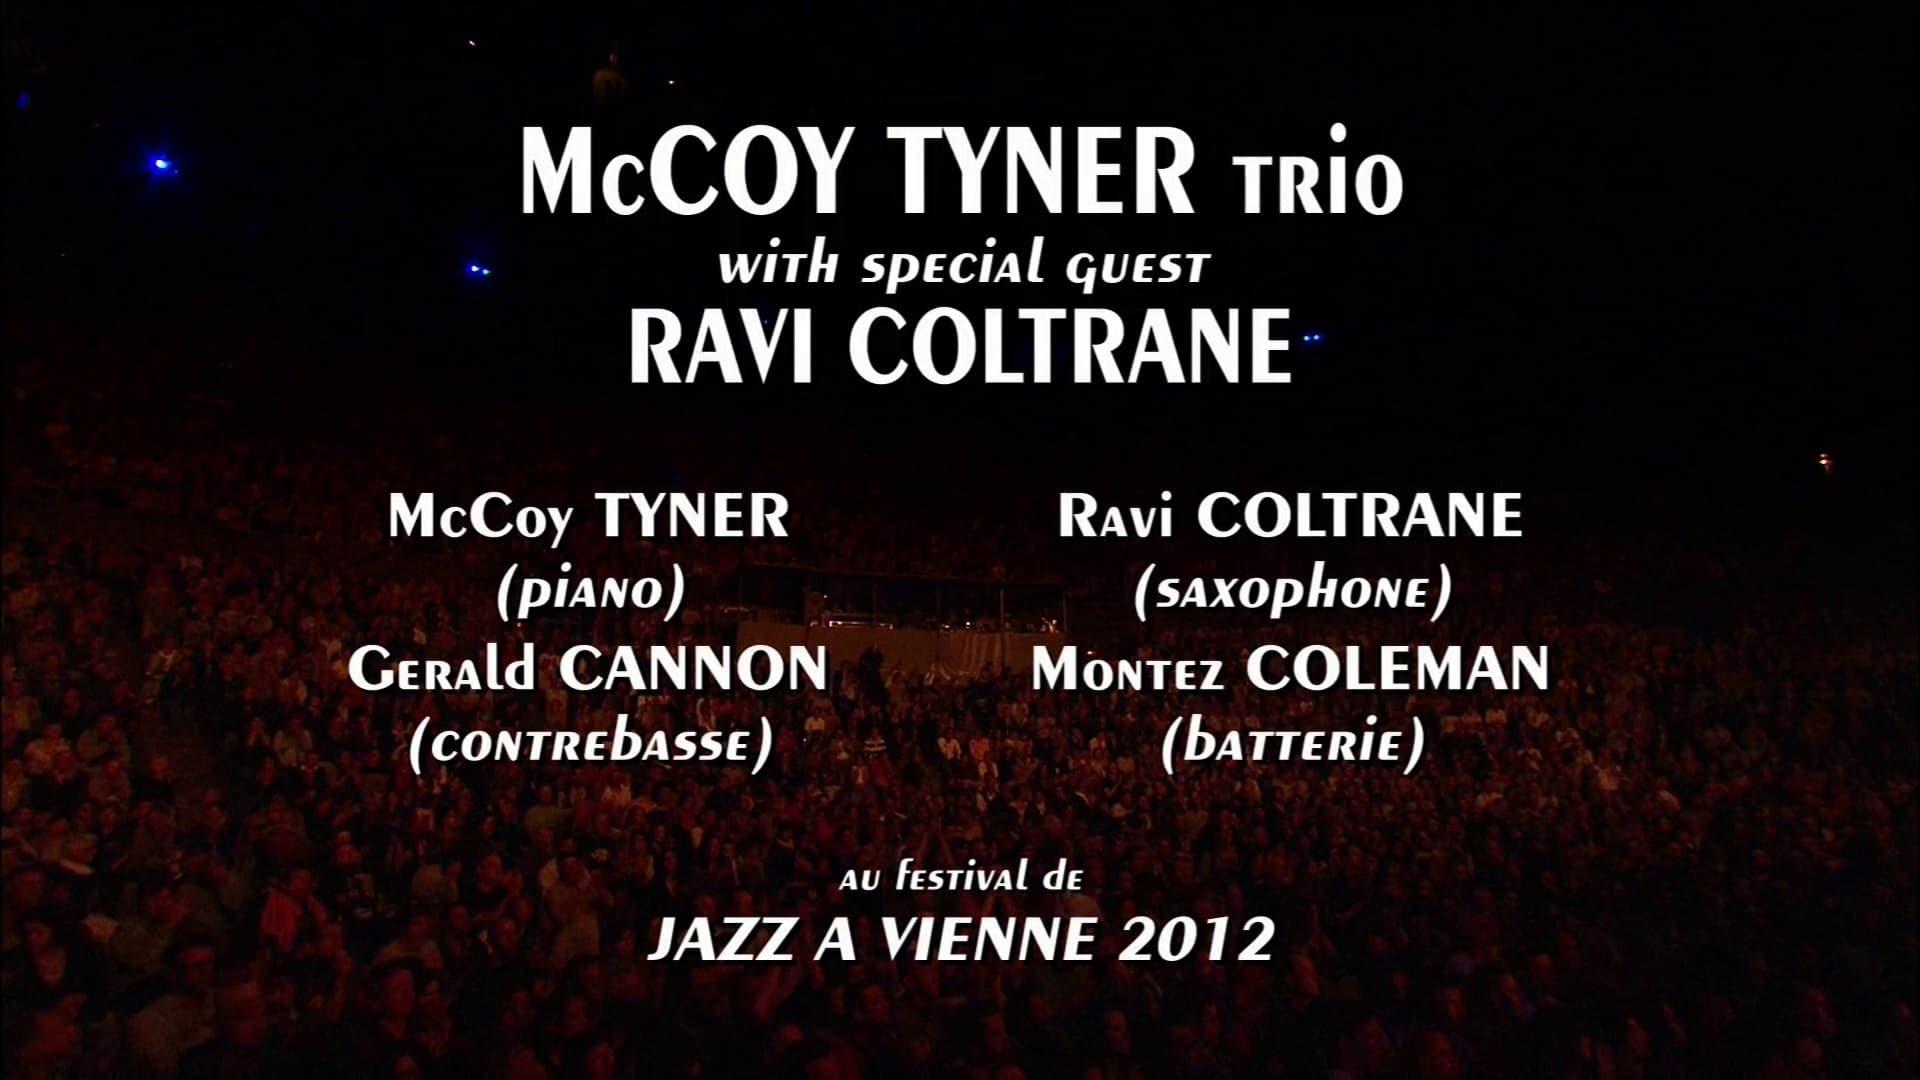 Ravi Coltrane backdrop